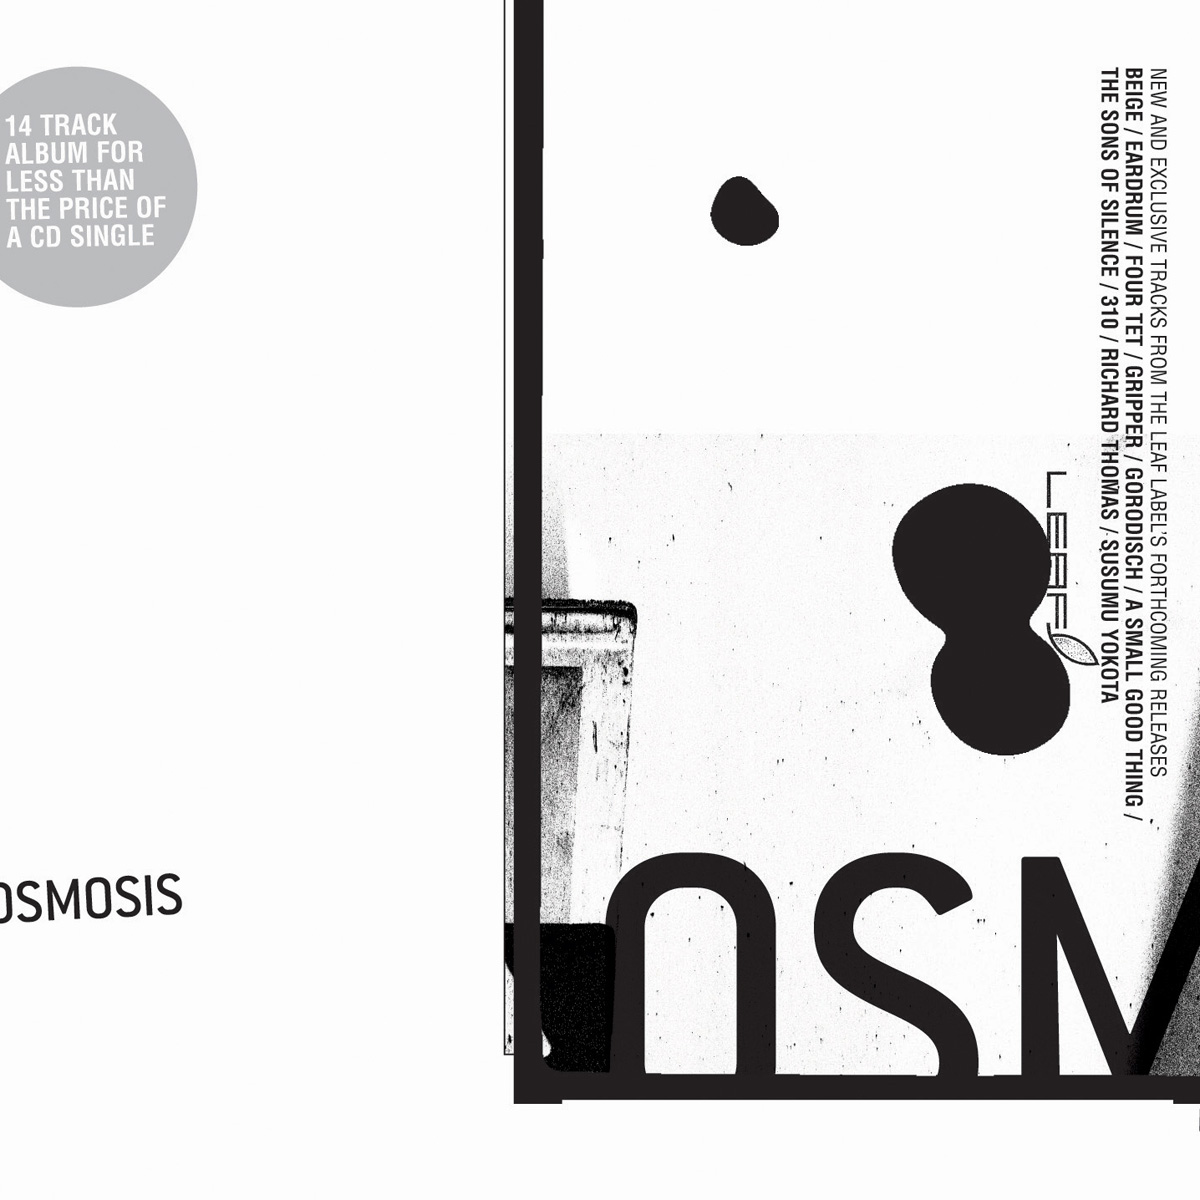 Various Artists: 'Osmosis'